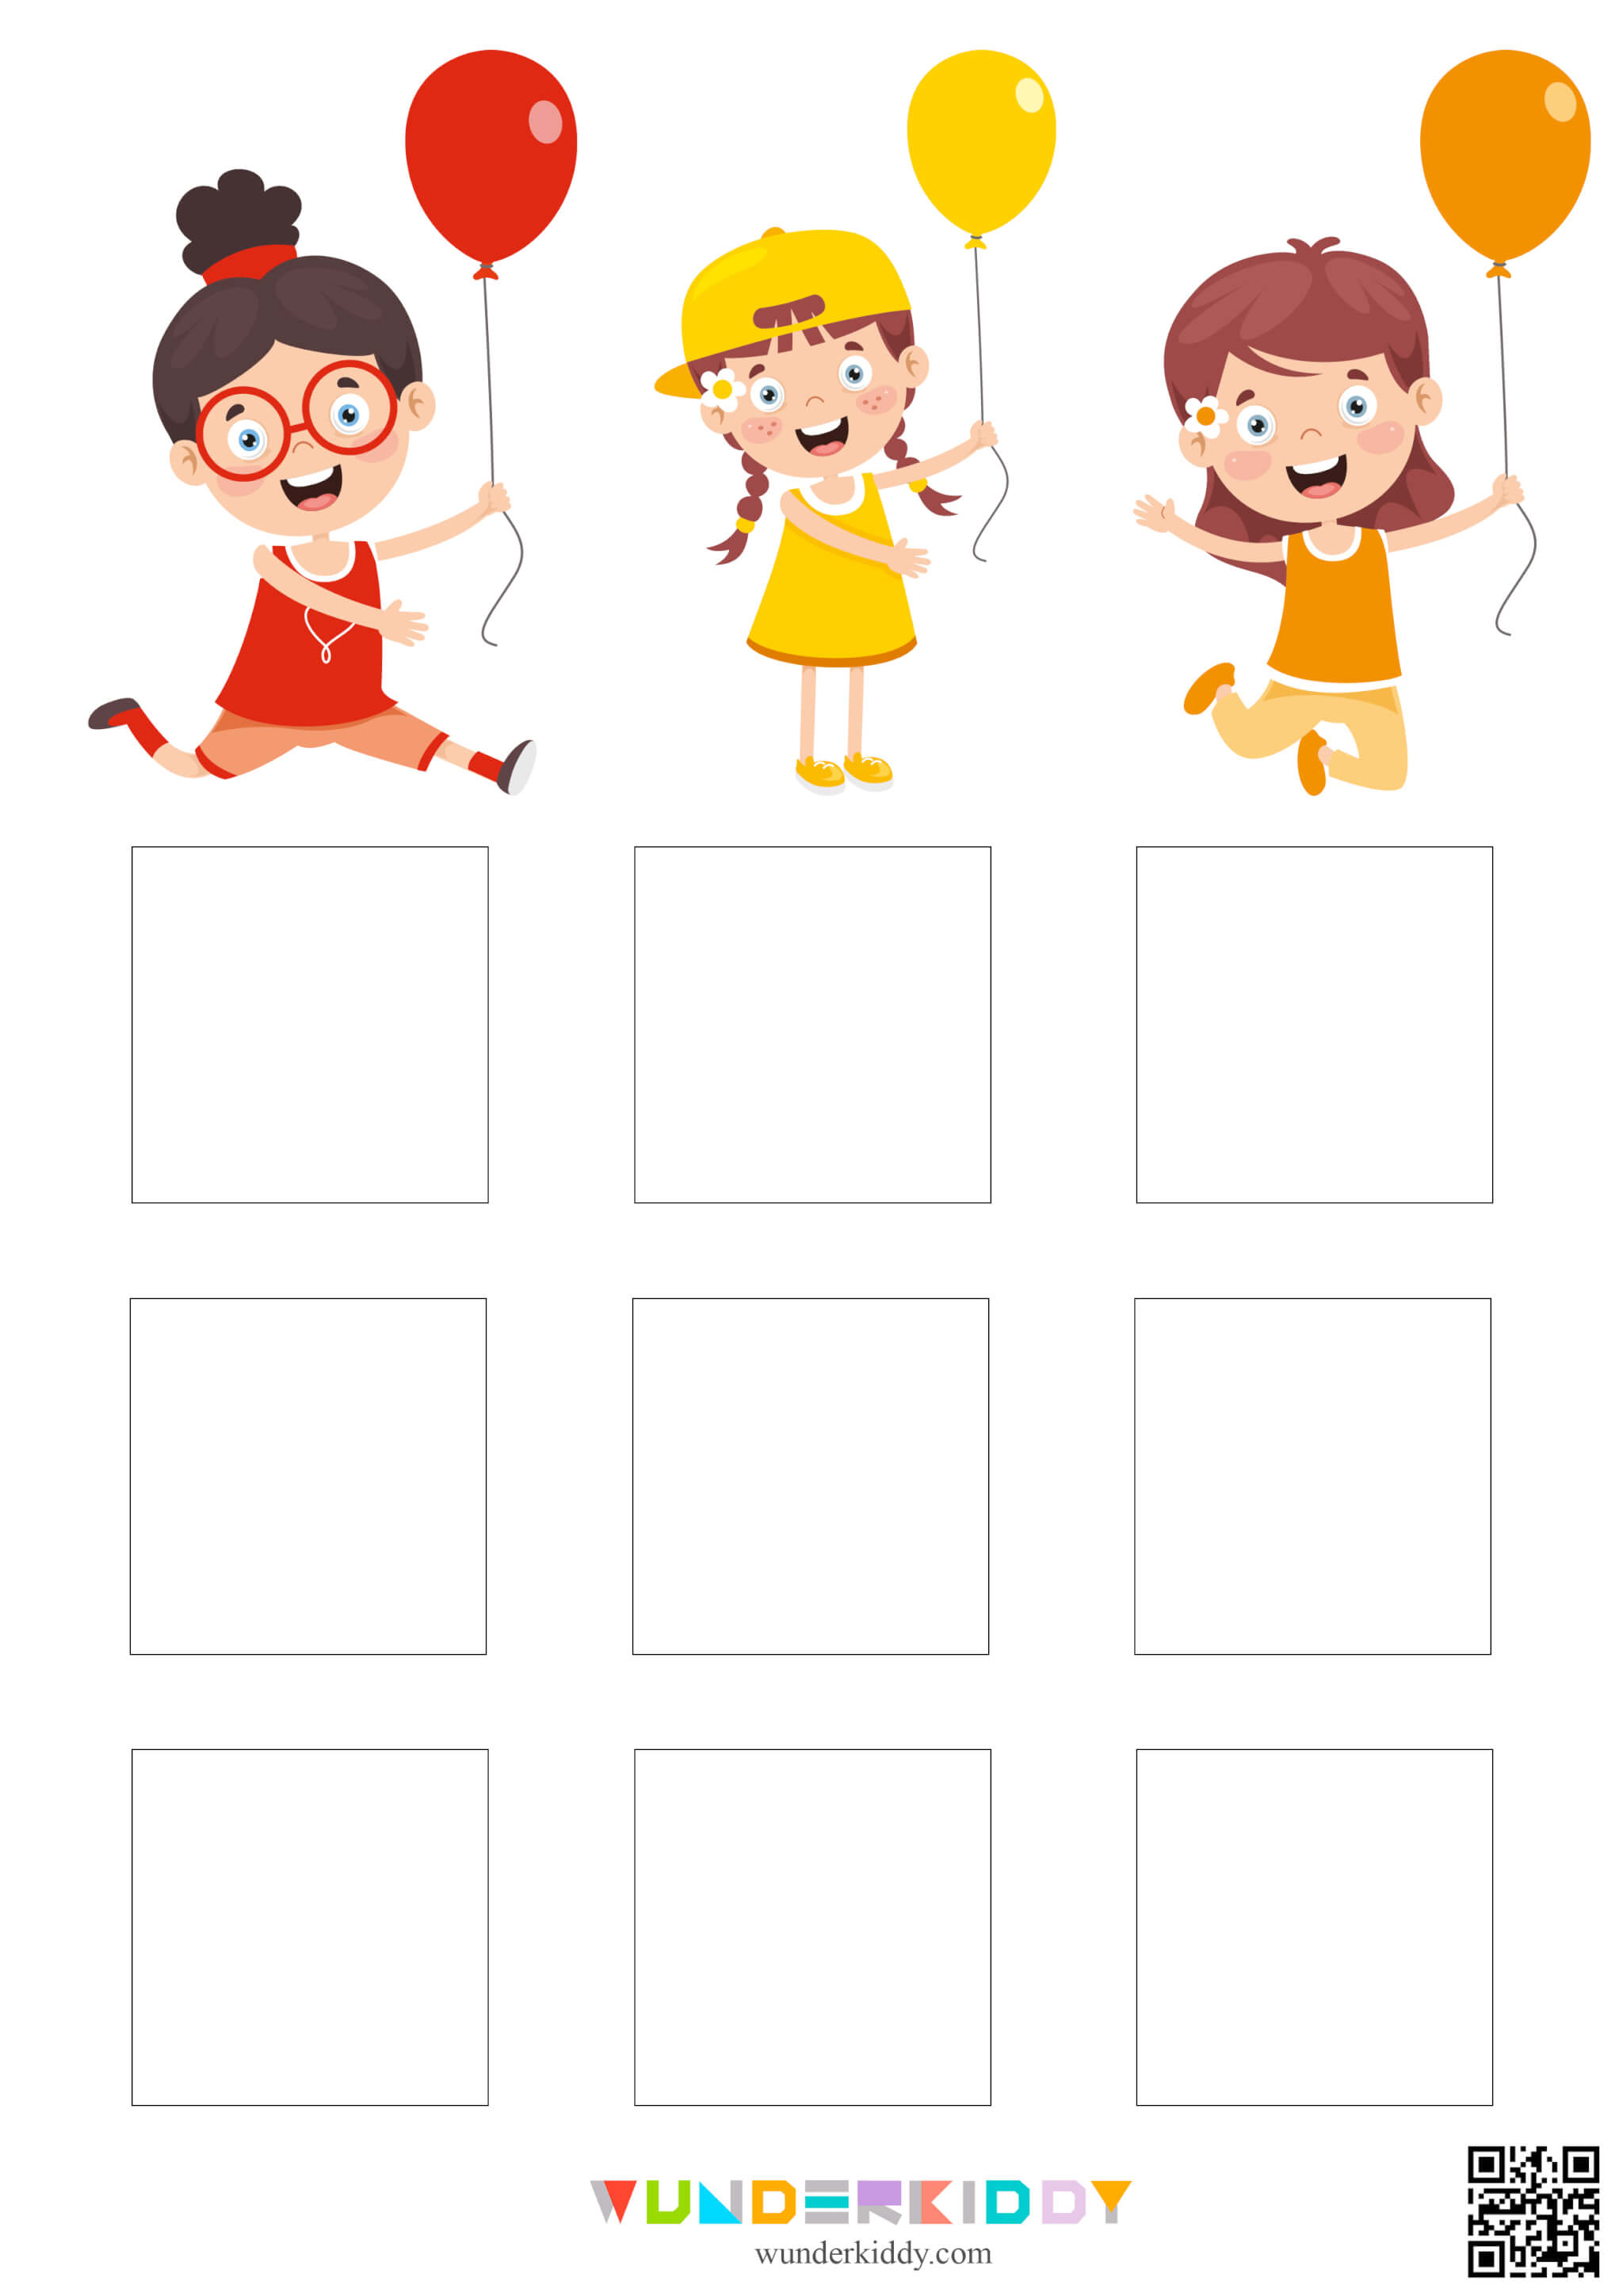 Color Matching Worksheets for Kindergarten - Image 2